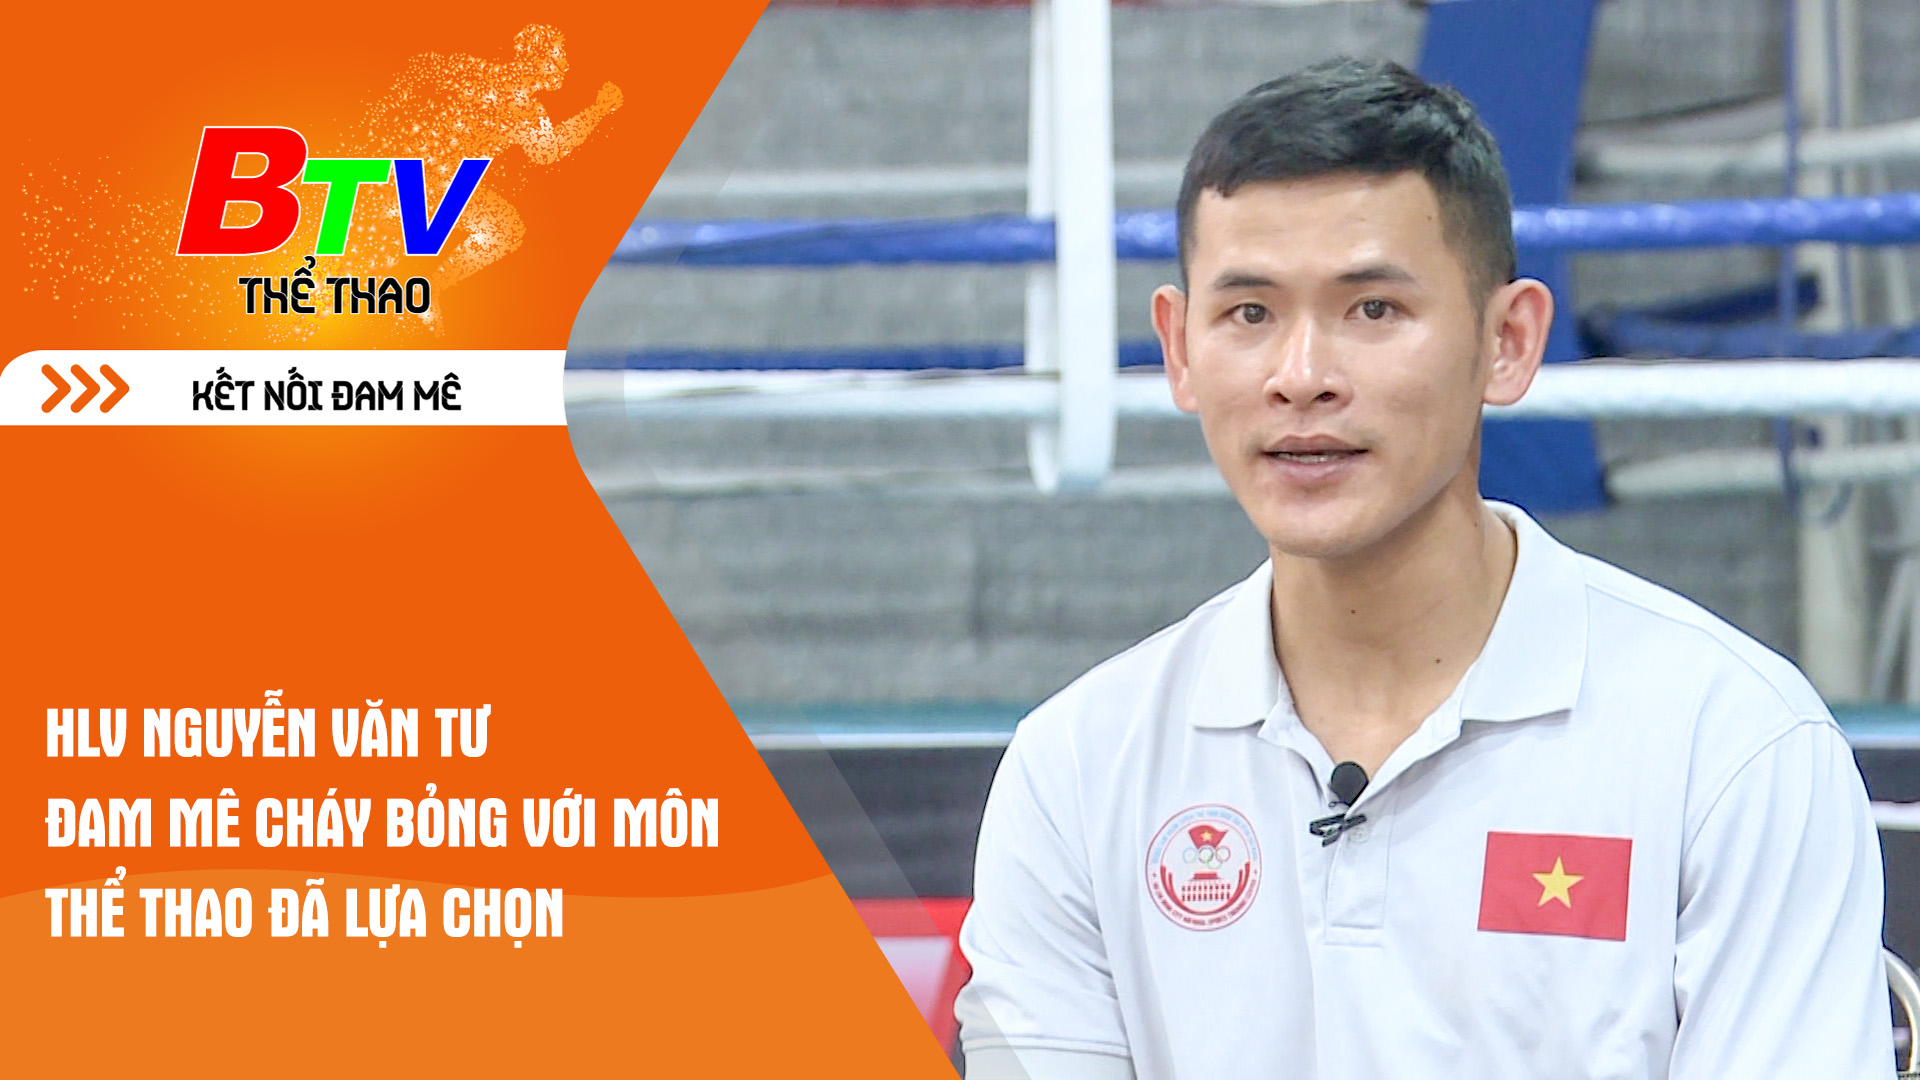 Huấn luyện viên Nguyễn Văn Tư đam mê cháy bỏng với môn thể thao đã lựa chọn